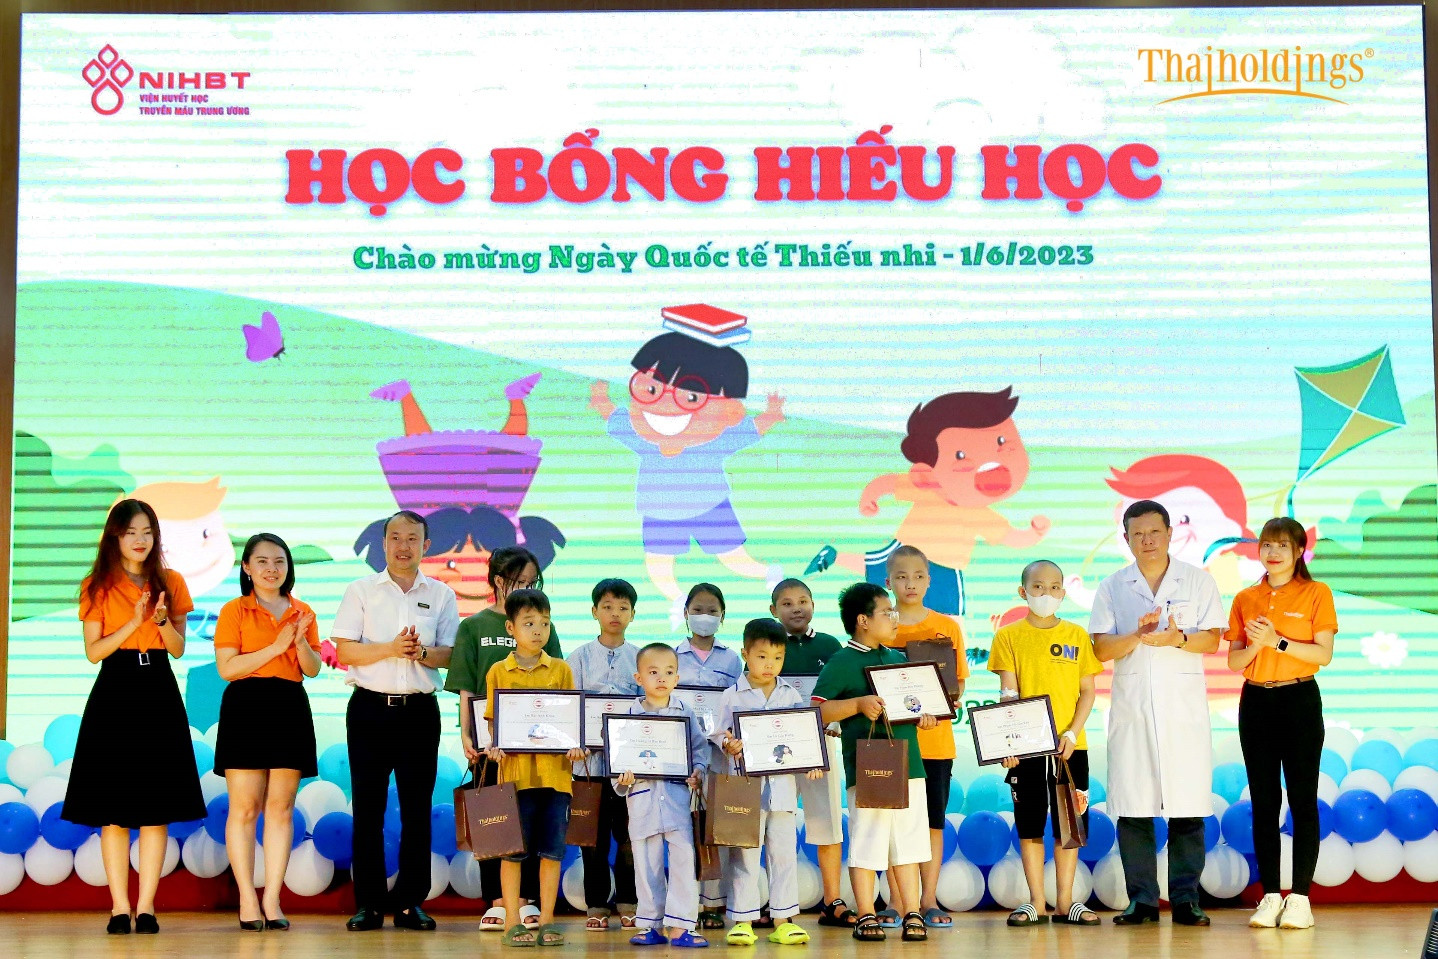 Ông Phan Mạnh Hùng -TGĐ cùng đại diện đoàn CBNV Thaiholdings trao tặng các suất Học bổng Hiếu học cho các bệnh nhi có thành tích học tập xuất sắc.